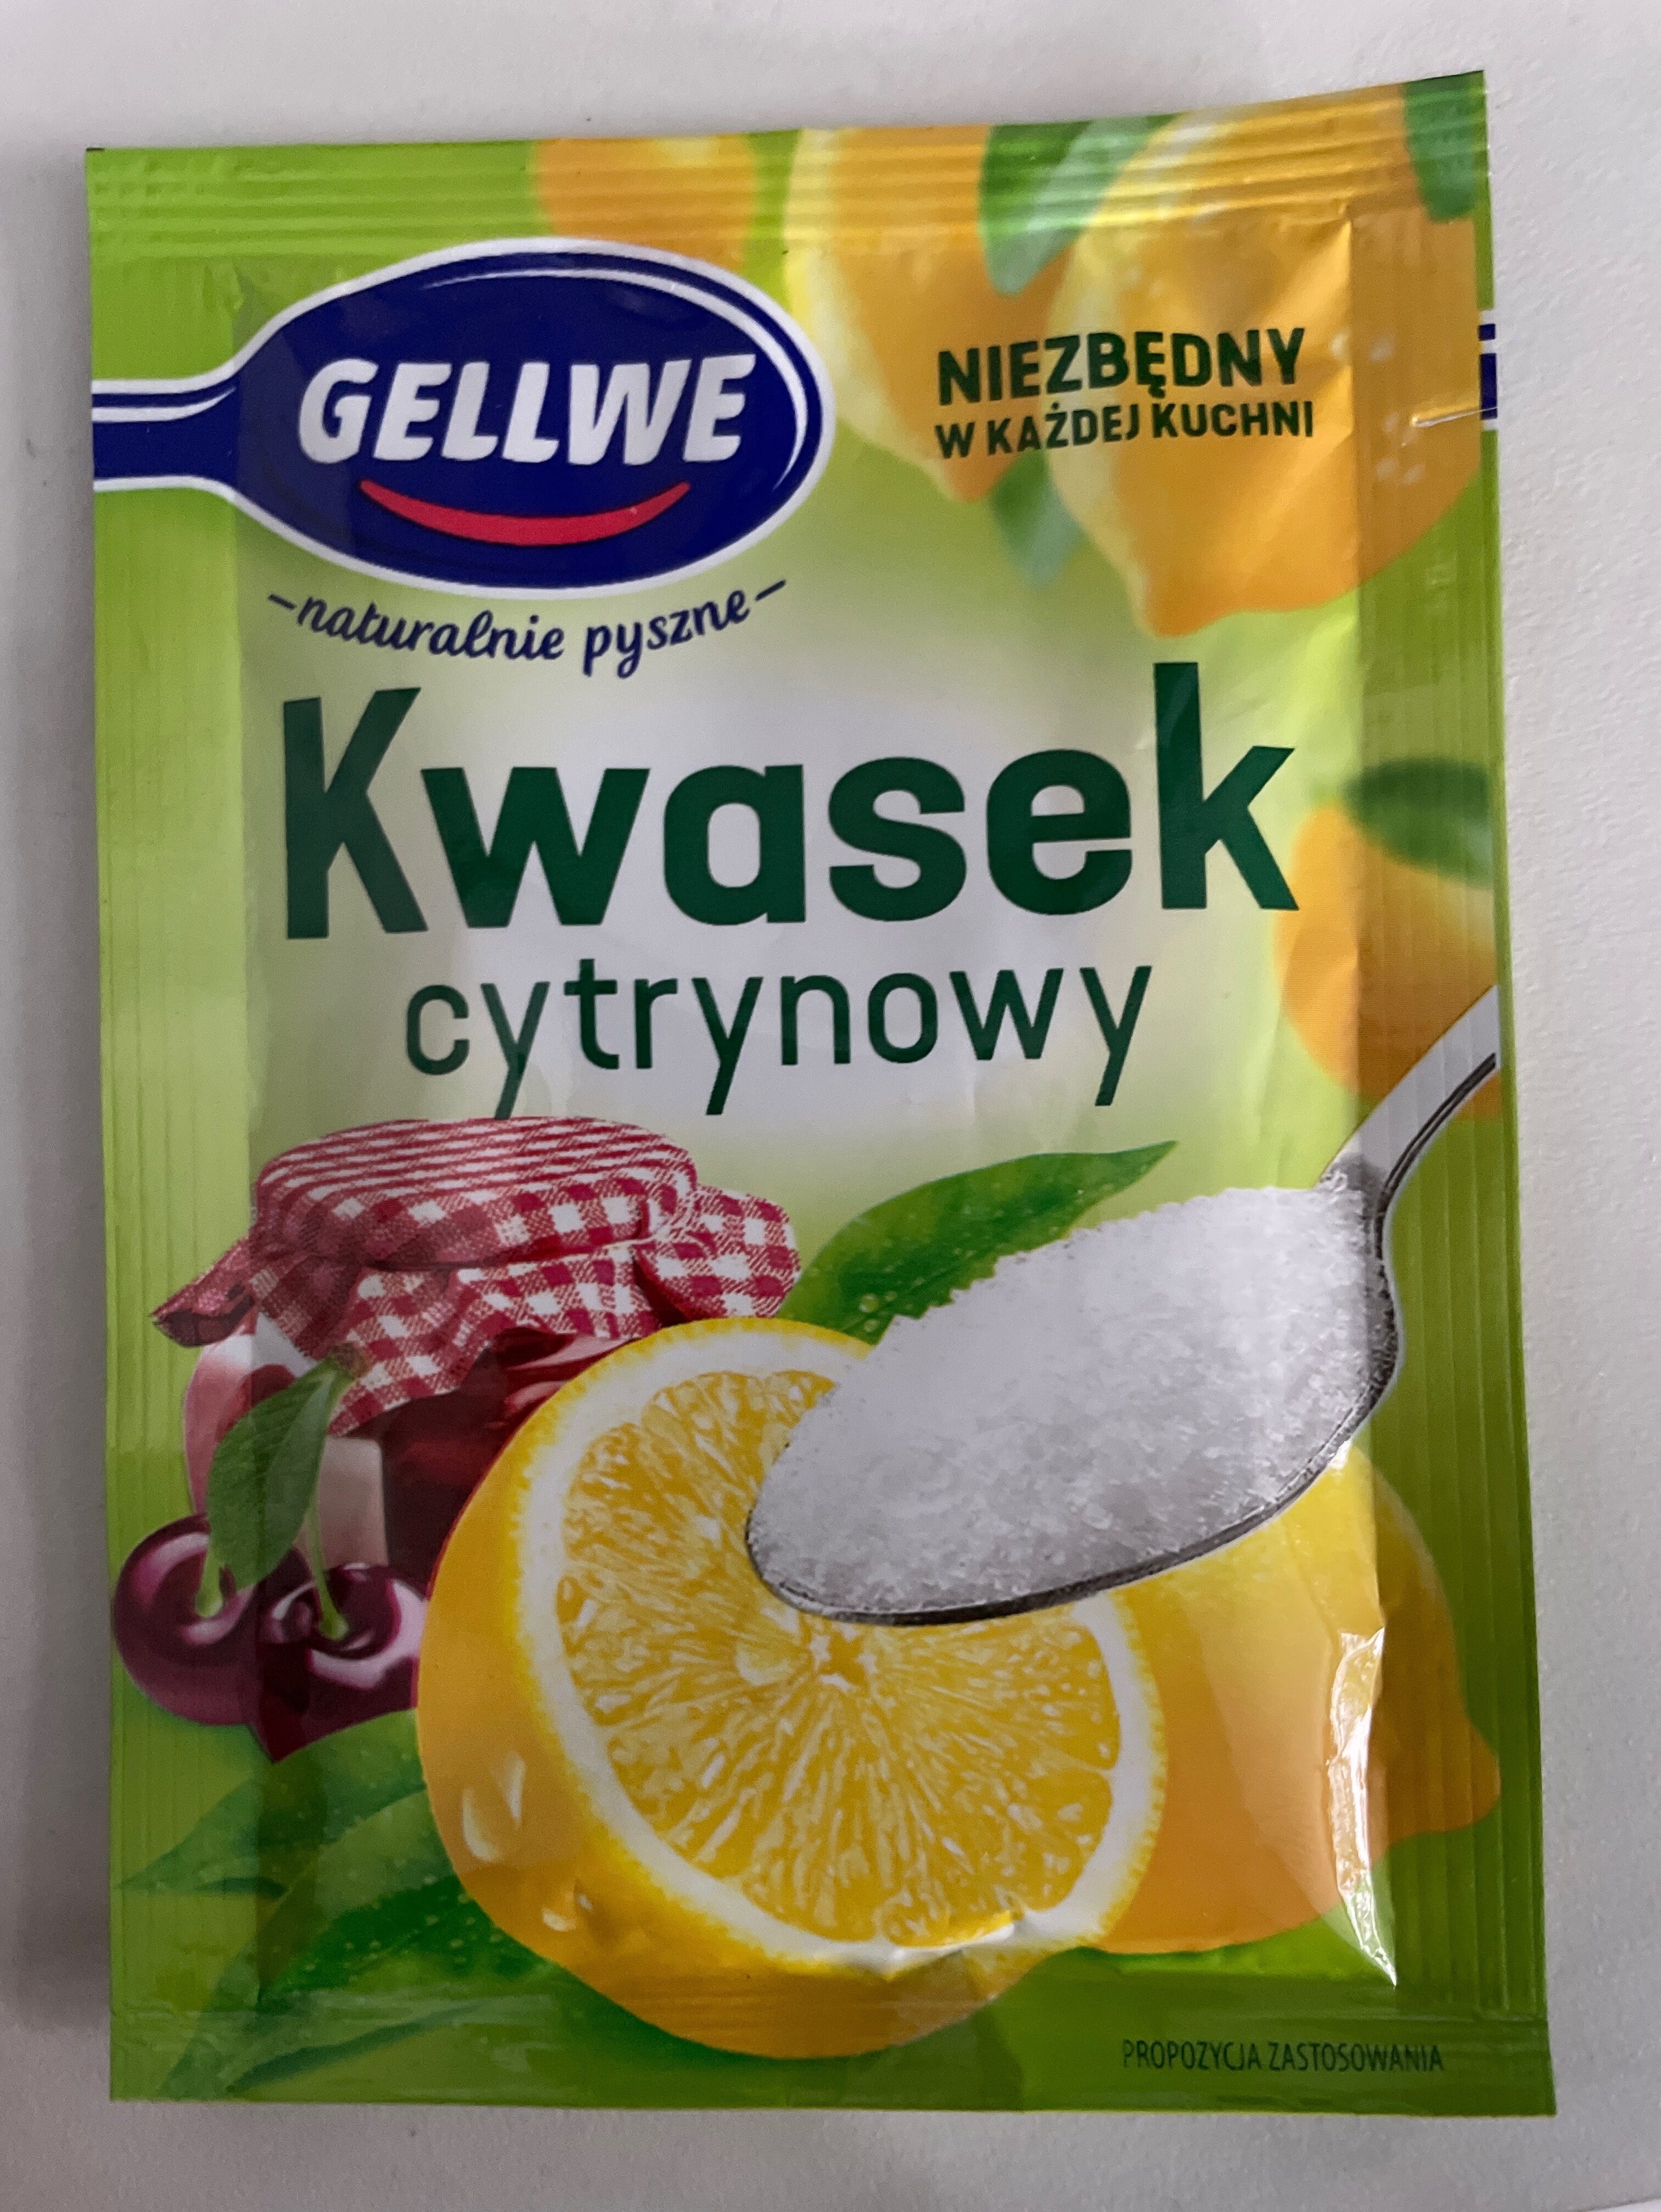 Kwasek cytrynowy - Product - pl